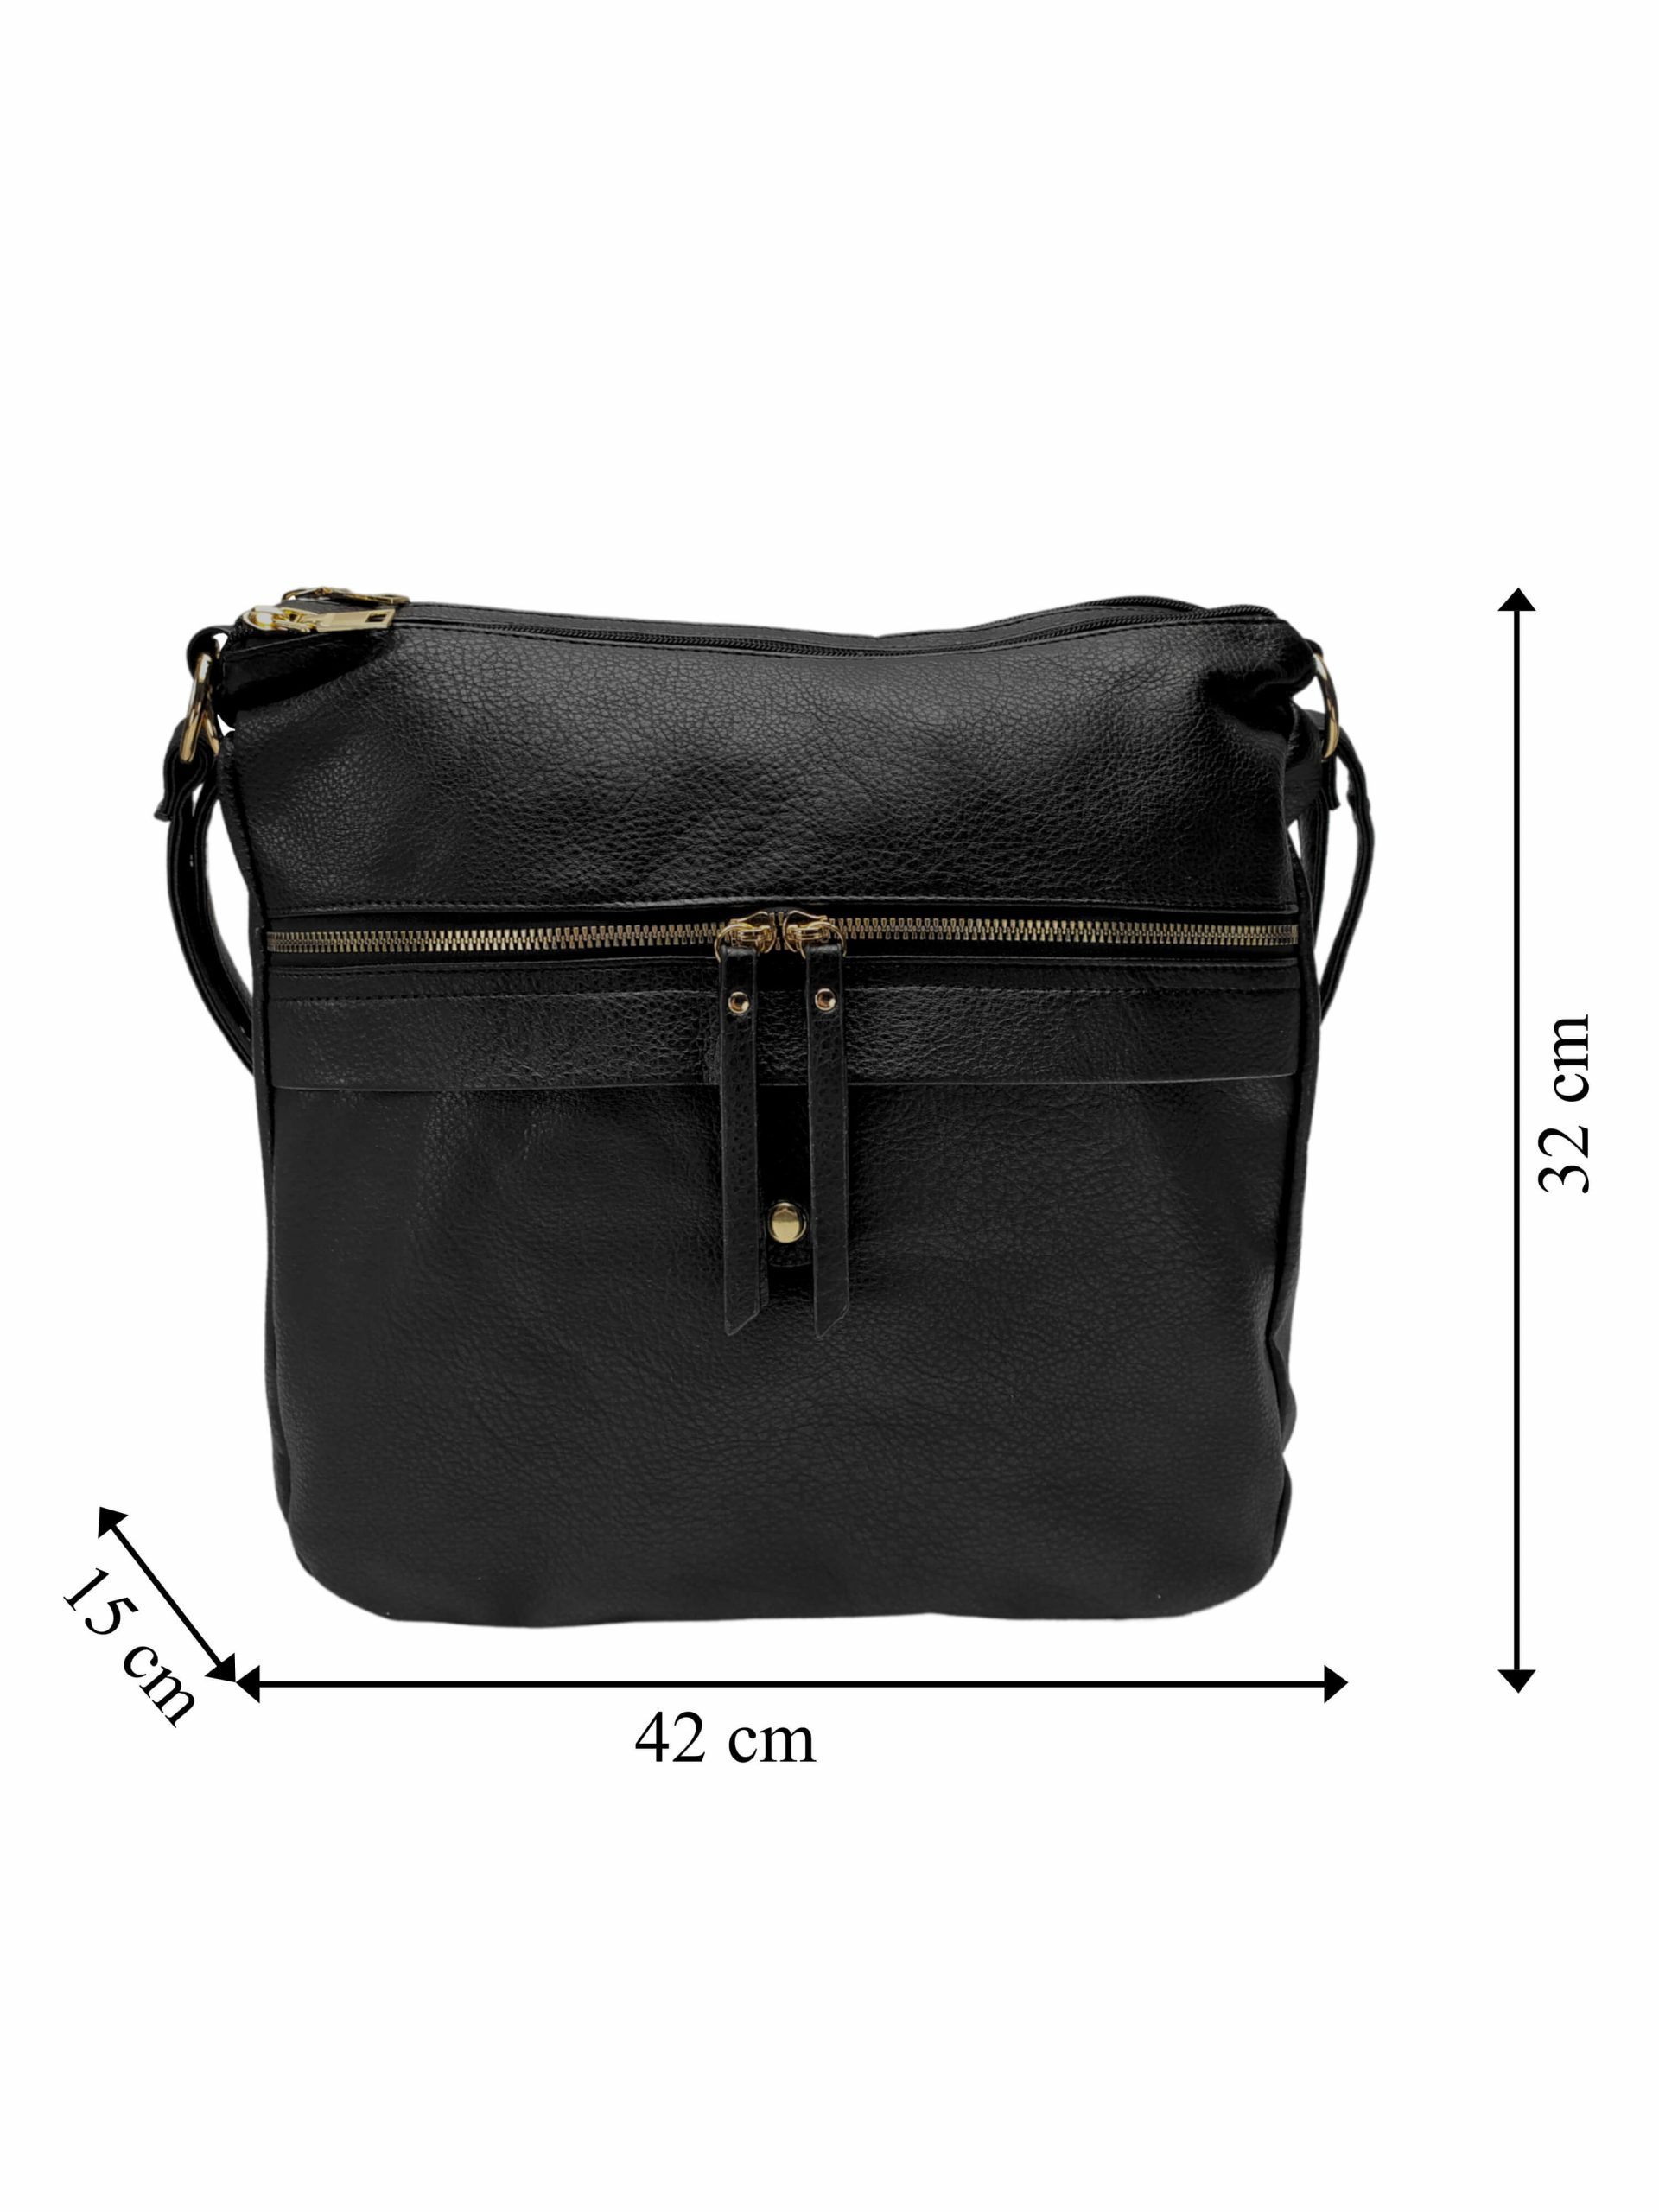 Velký černý kabelko-batoh 2v1 s kapsou, Int. Company, H23, přední strana kabelko-batohu s rozměry